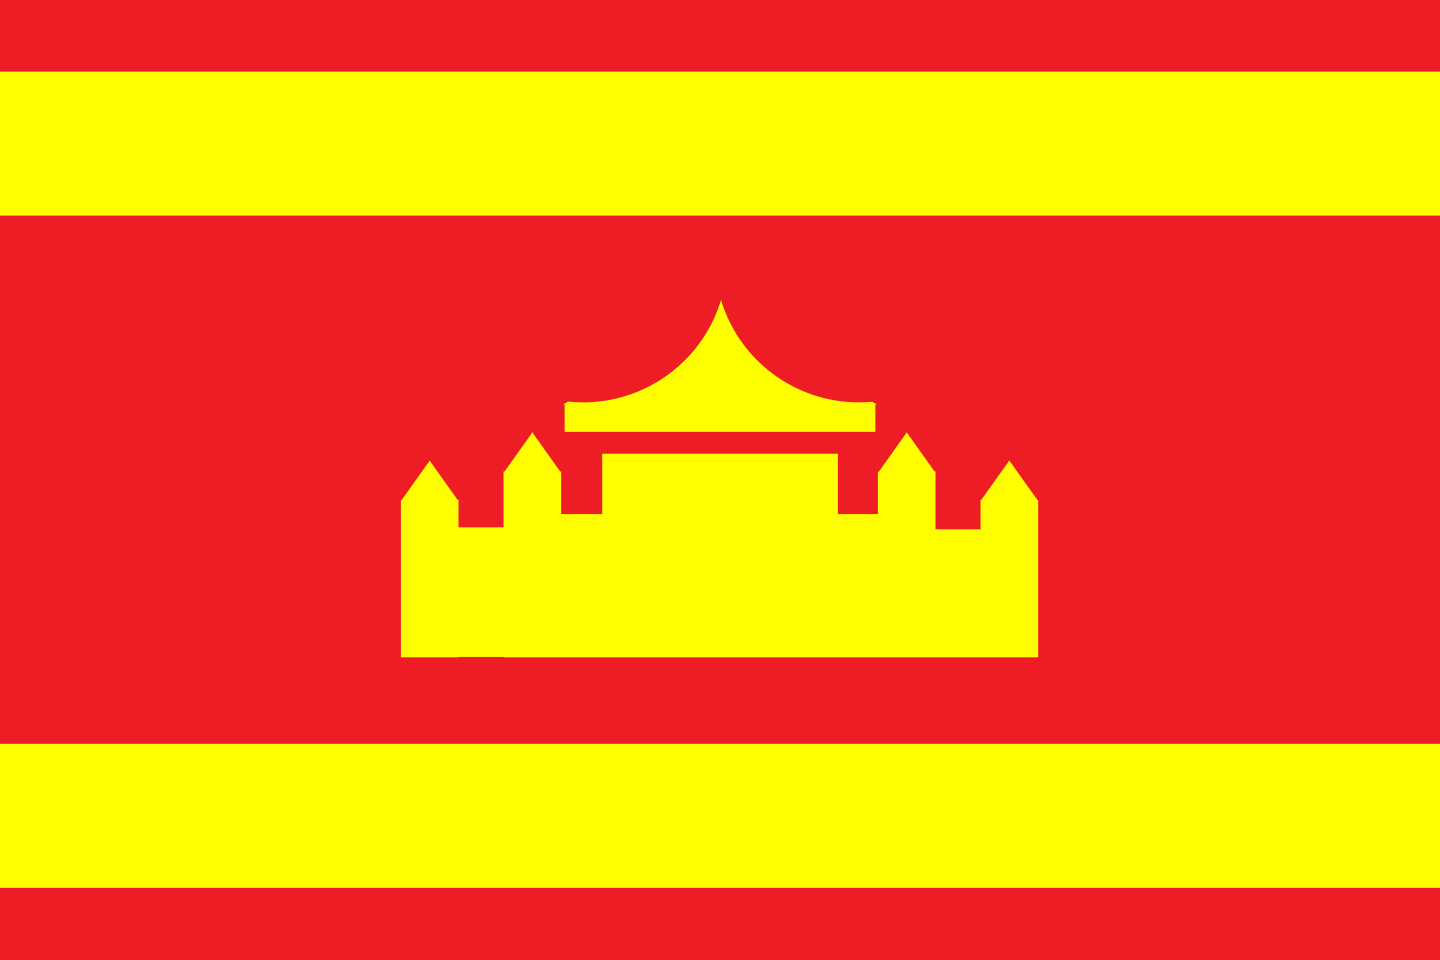 China-Taiyuan (North China) (3).png